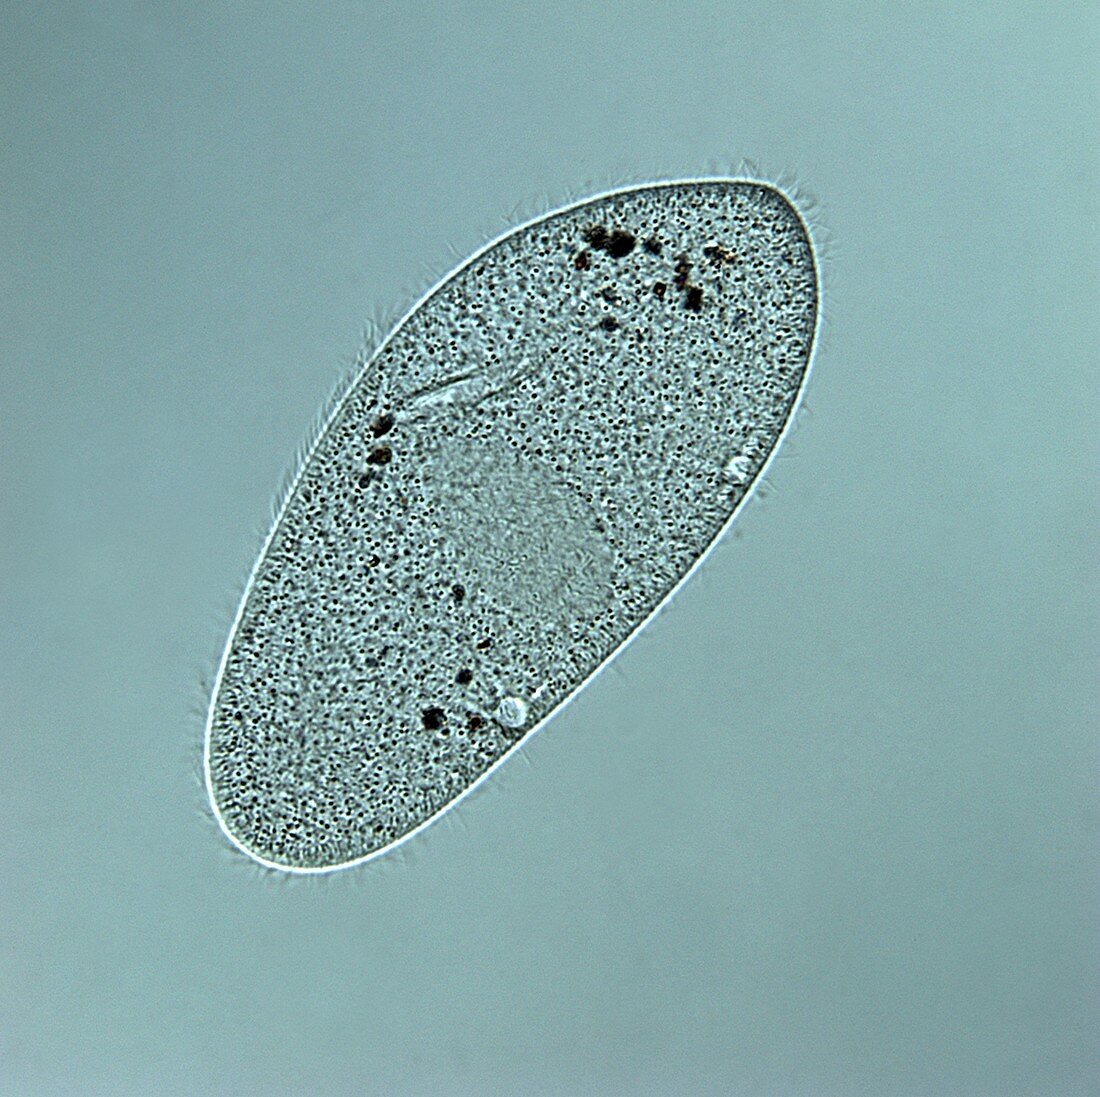 Paramecium multimicronucleatum, LM